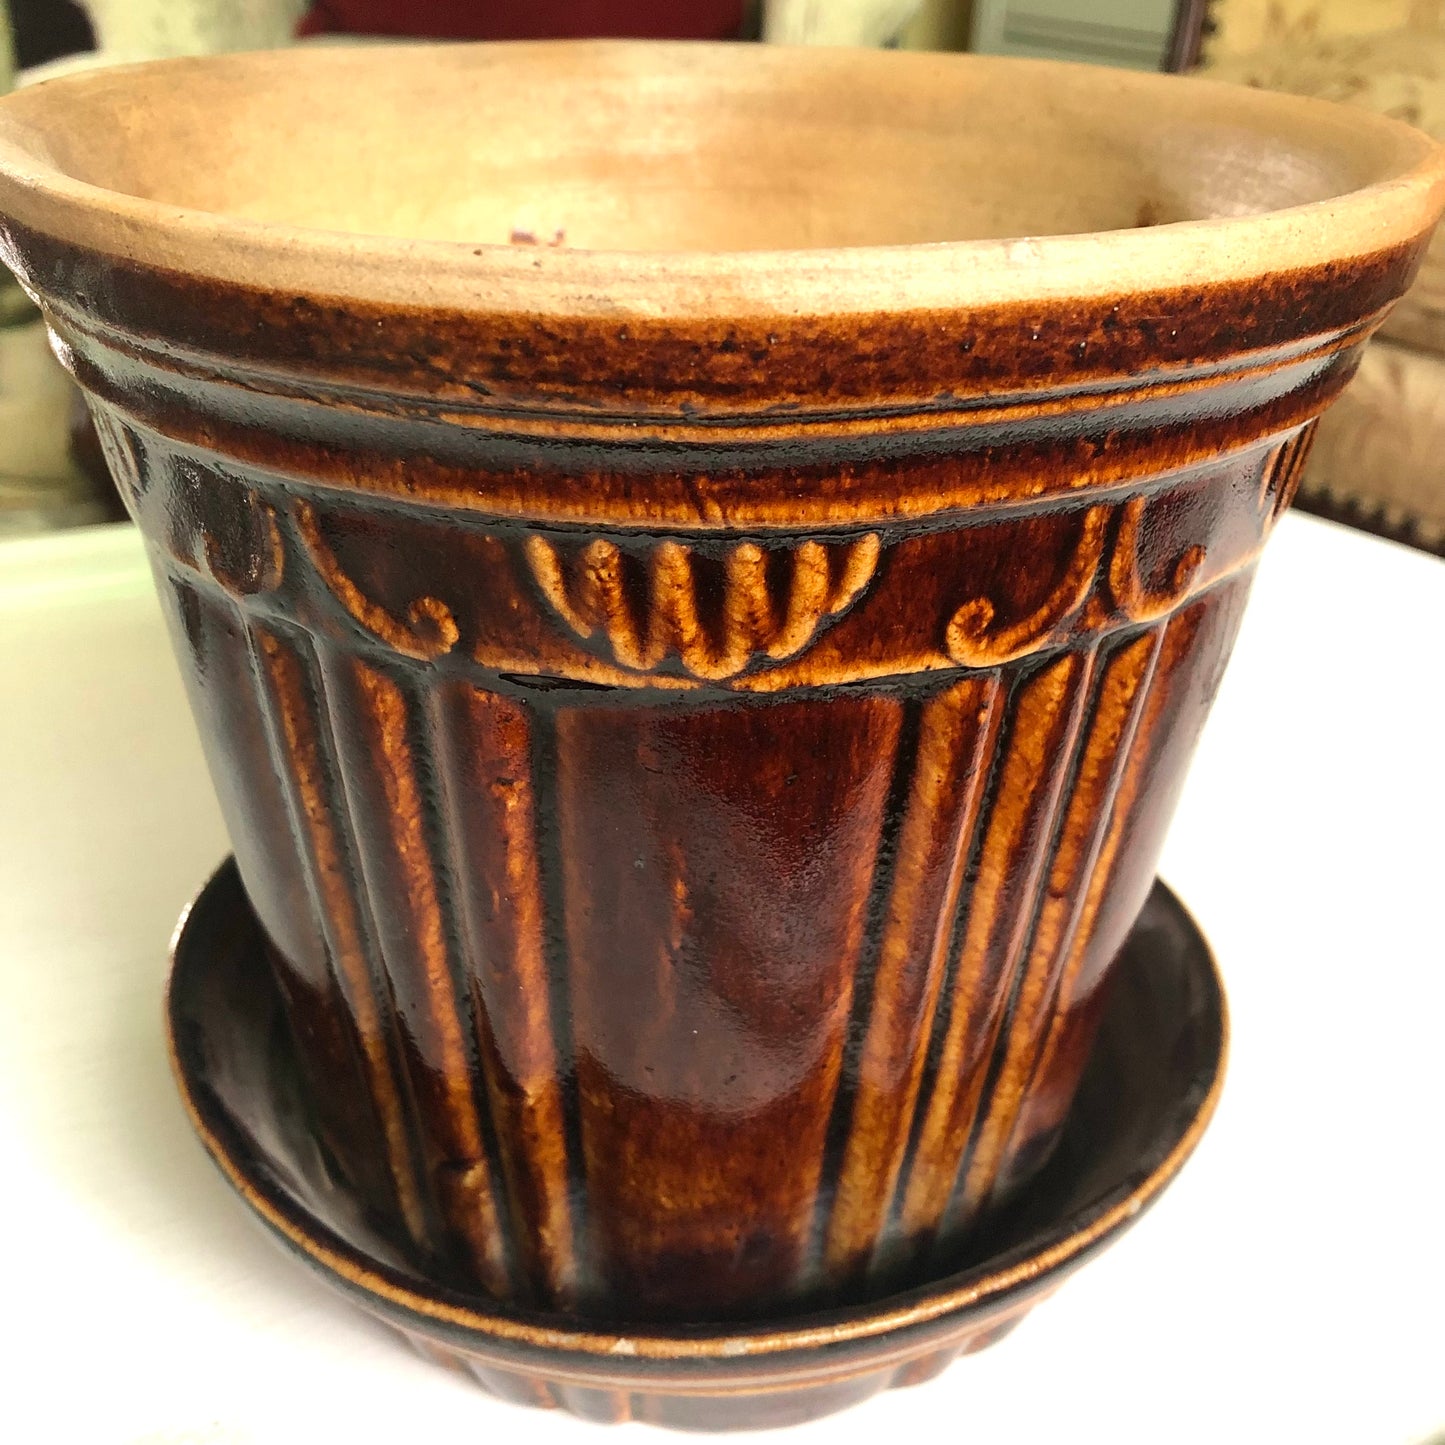 Glazed Stoneware Flower Pot, 7"